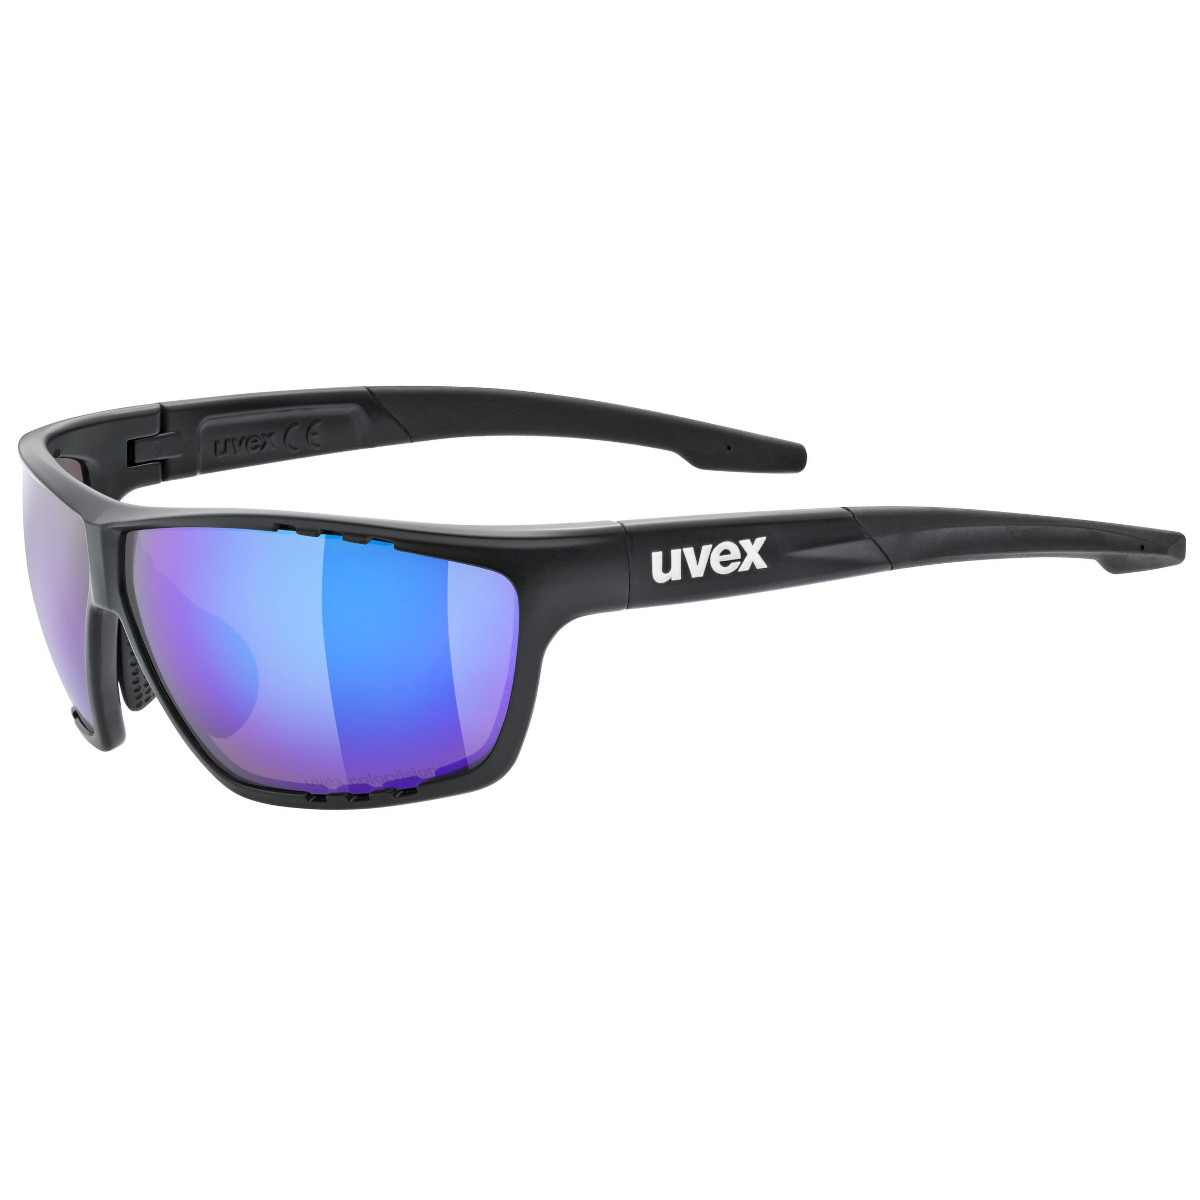 Produktbild von Uvex sportstyle 706 CV Brille - black matt/mirror blue colorvision